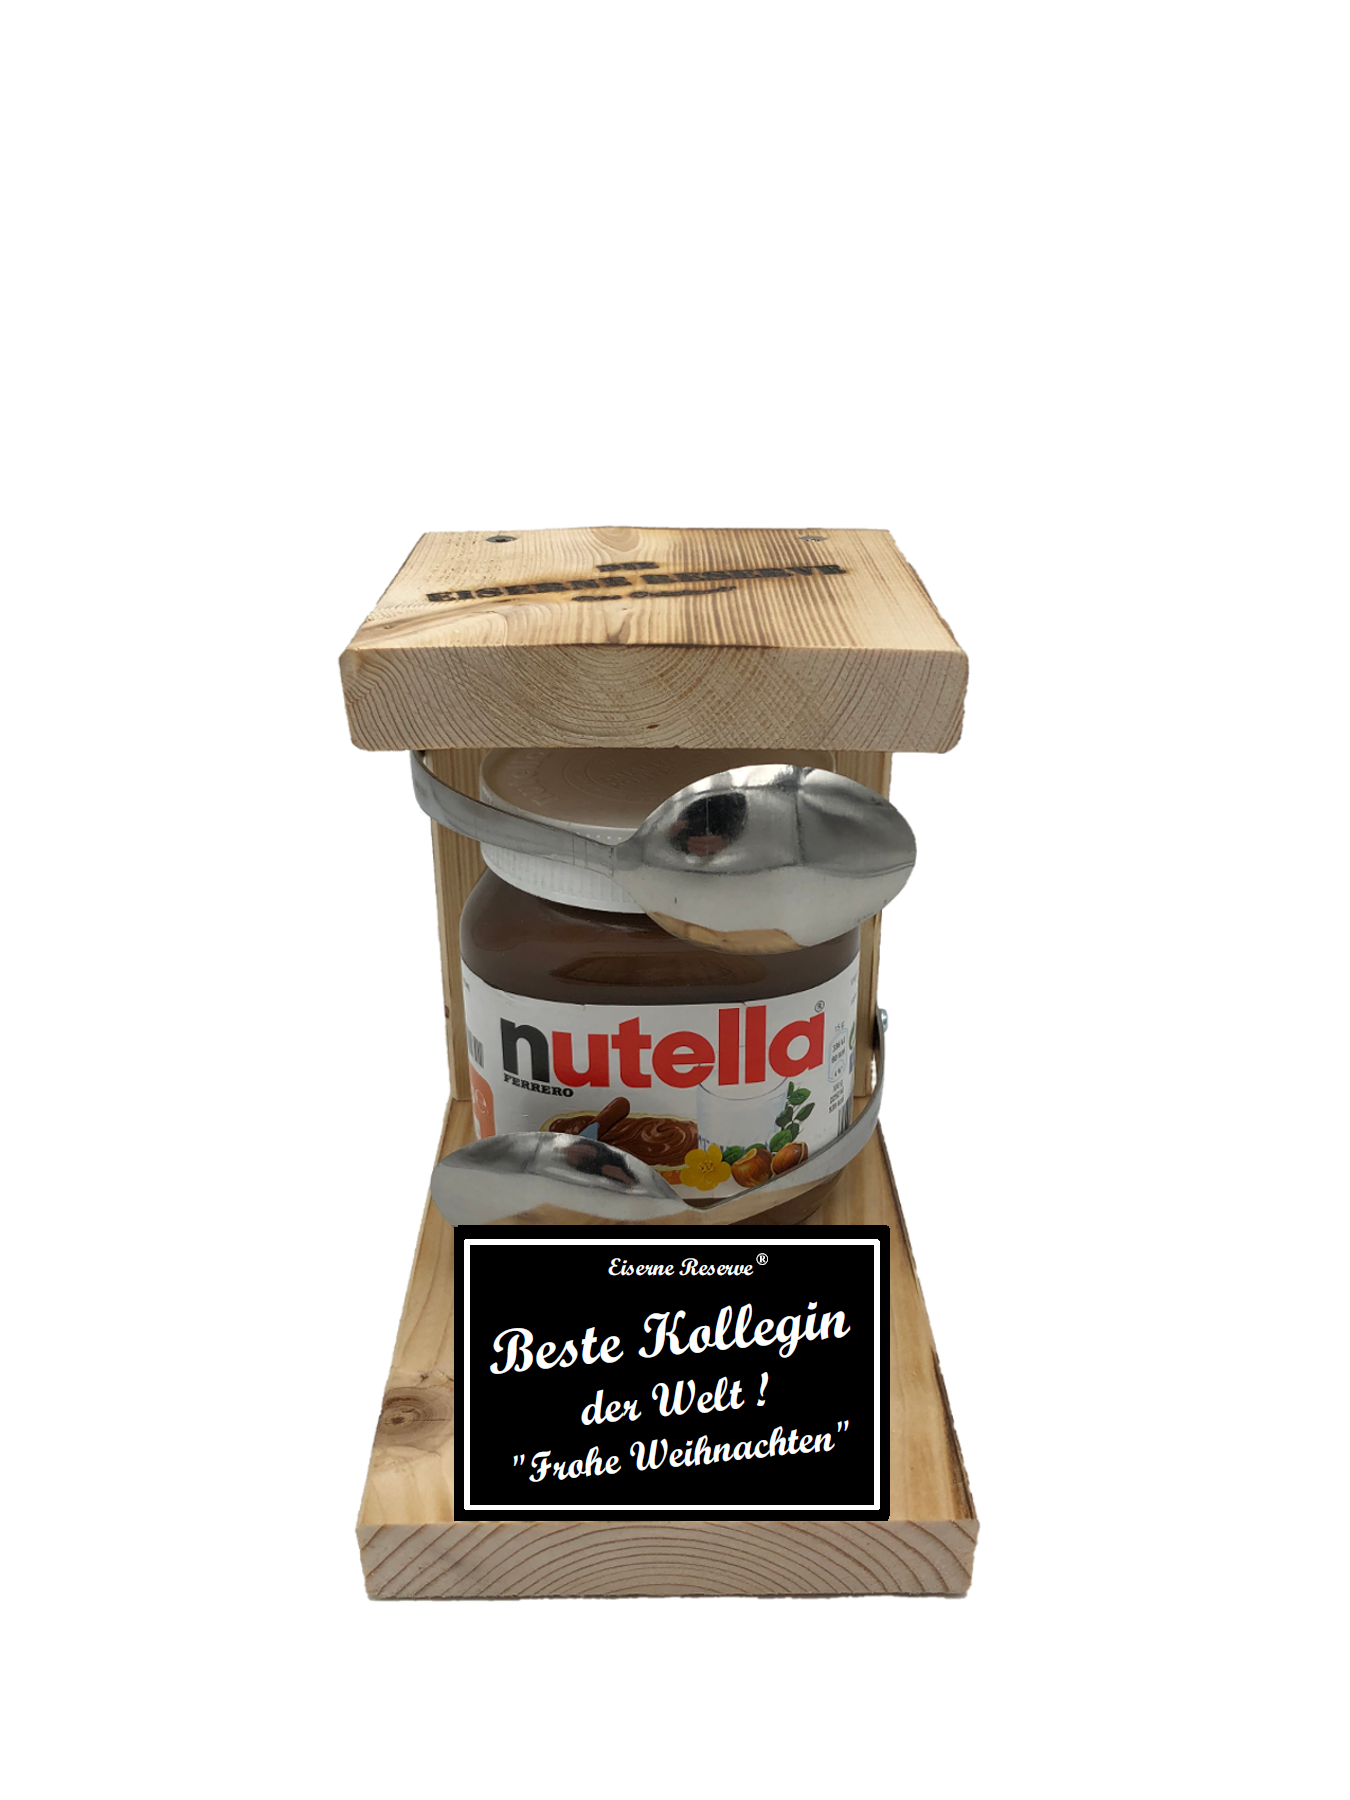 Beste Kollegin der Welt Frohe Weihnachten Löffel Nutella Geschenk - Die Nutella Geschenkidee